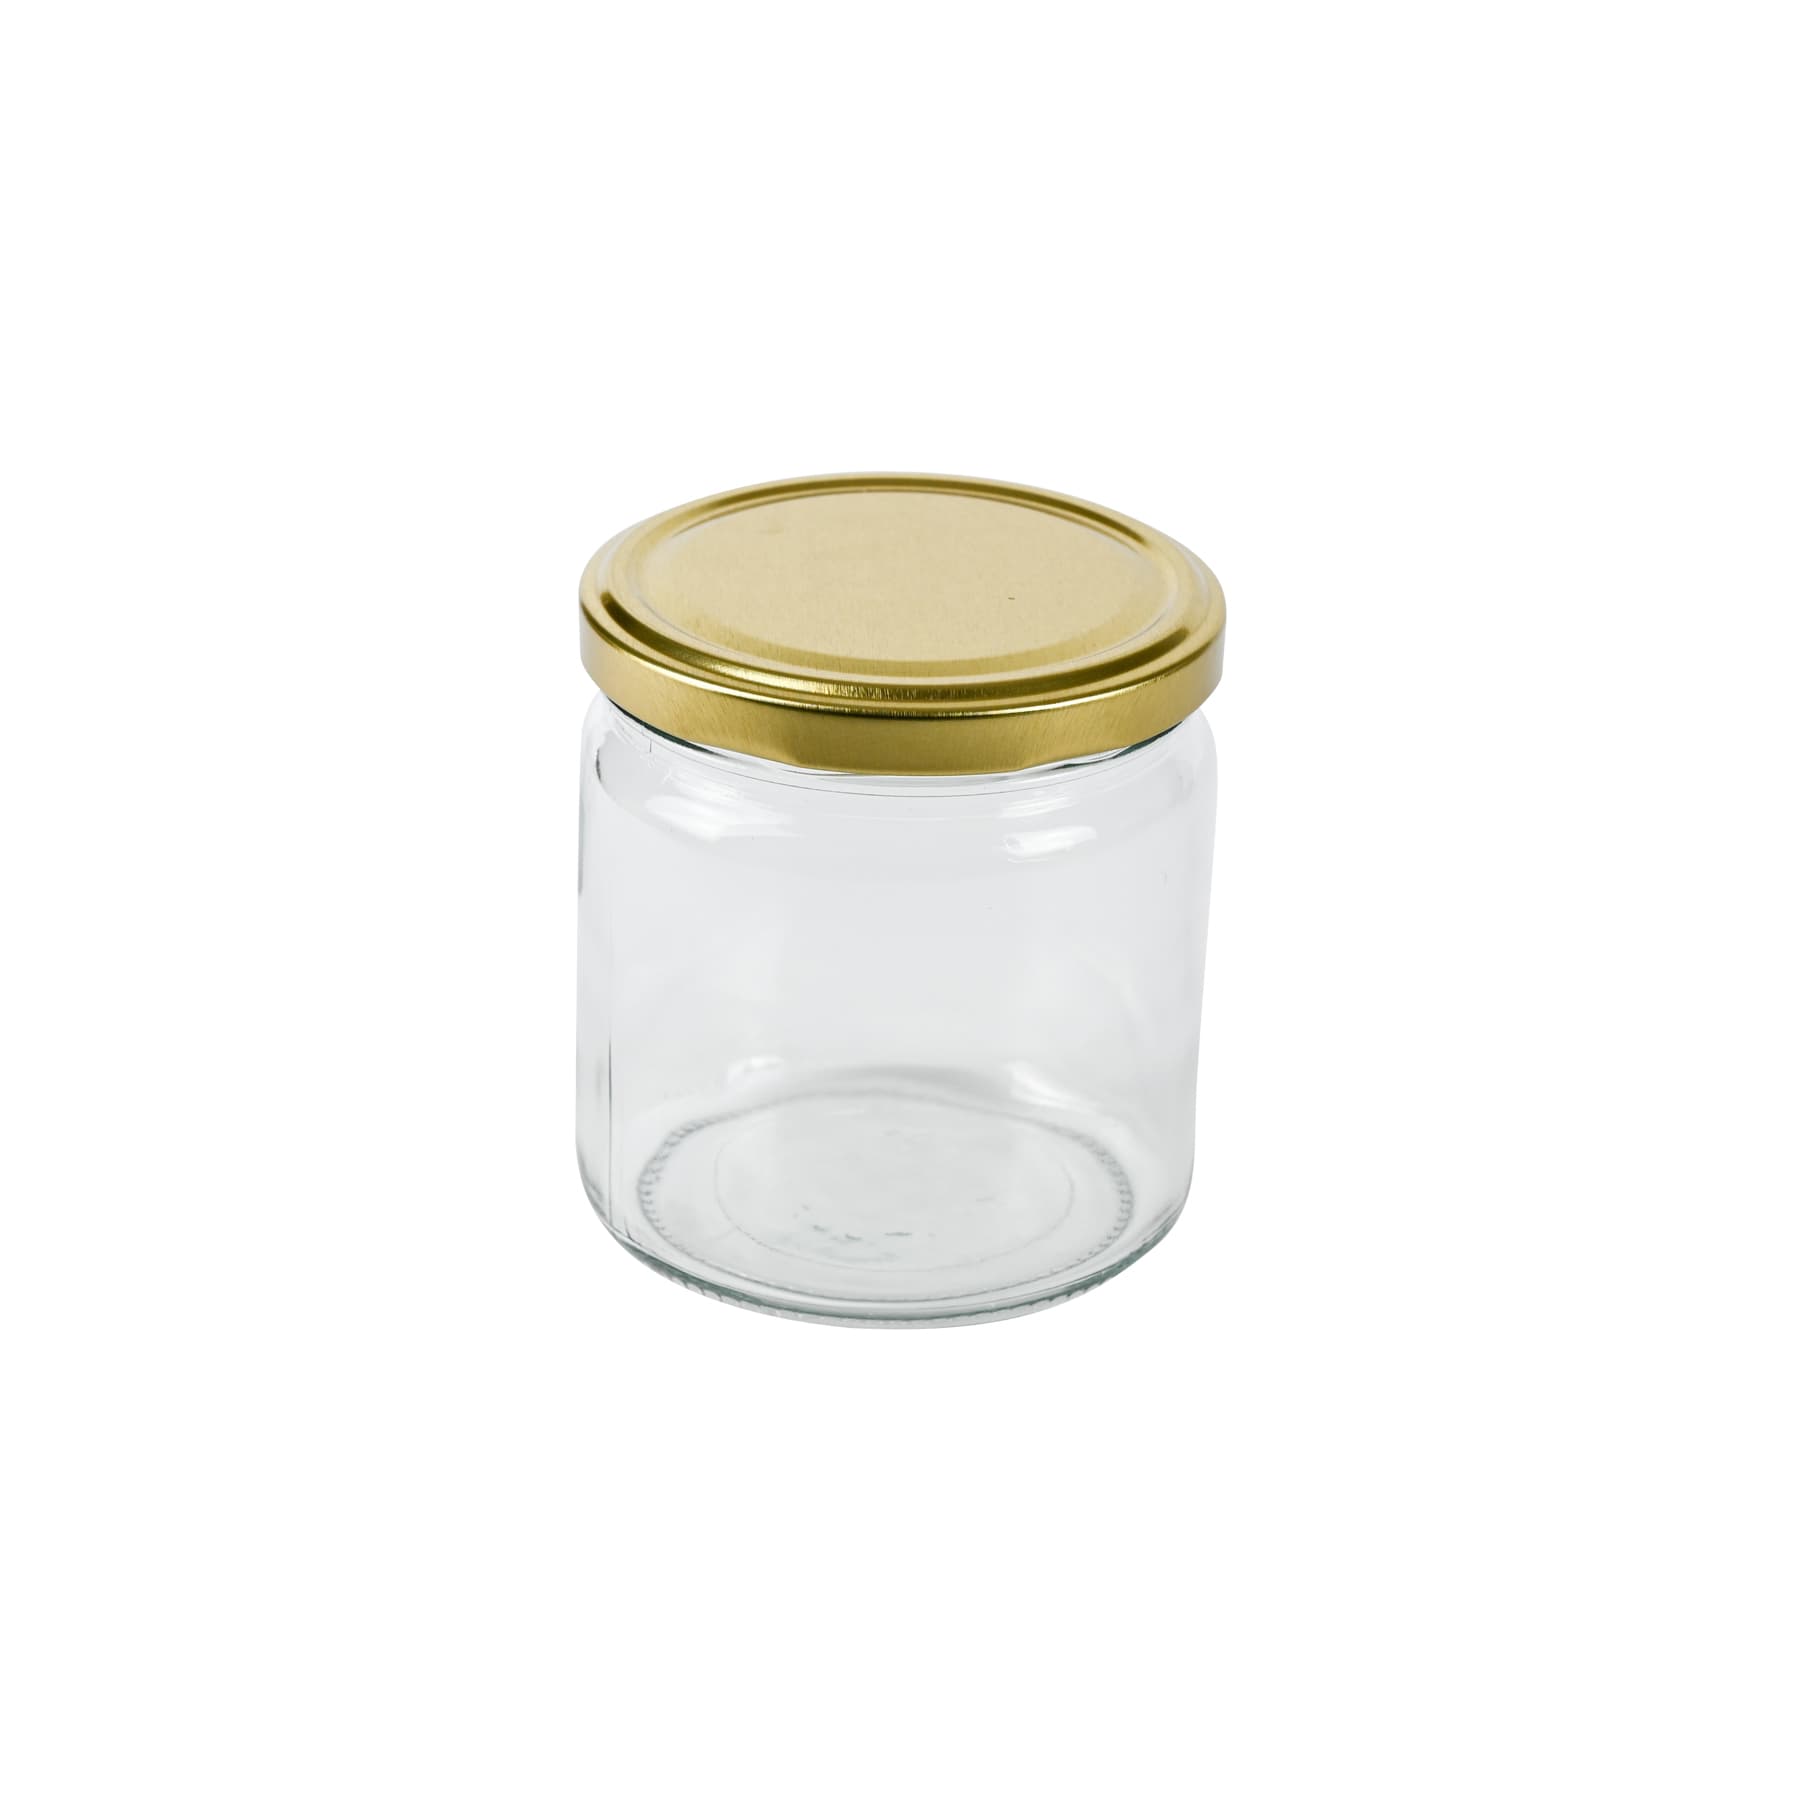 Rundglas 500g (405 ml), mit T0  Deckel gold 82 mm lose zur Selbstabholung ohne Karton